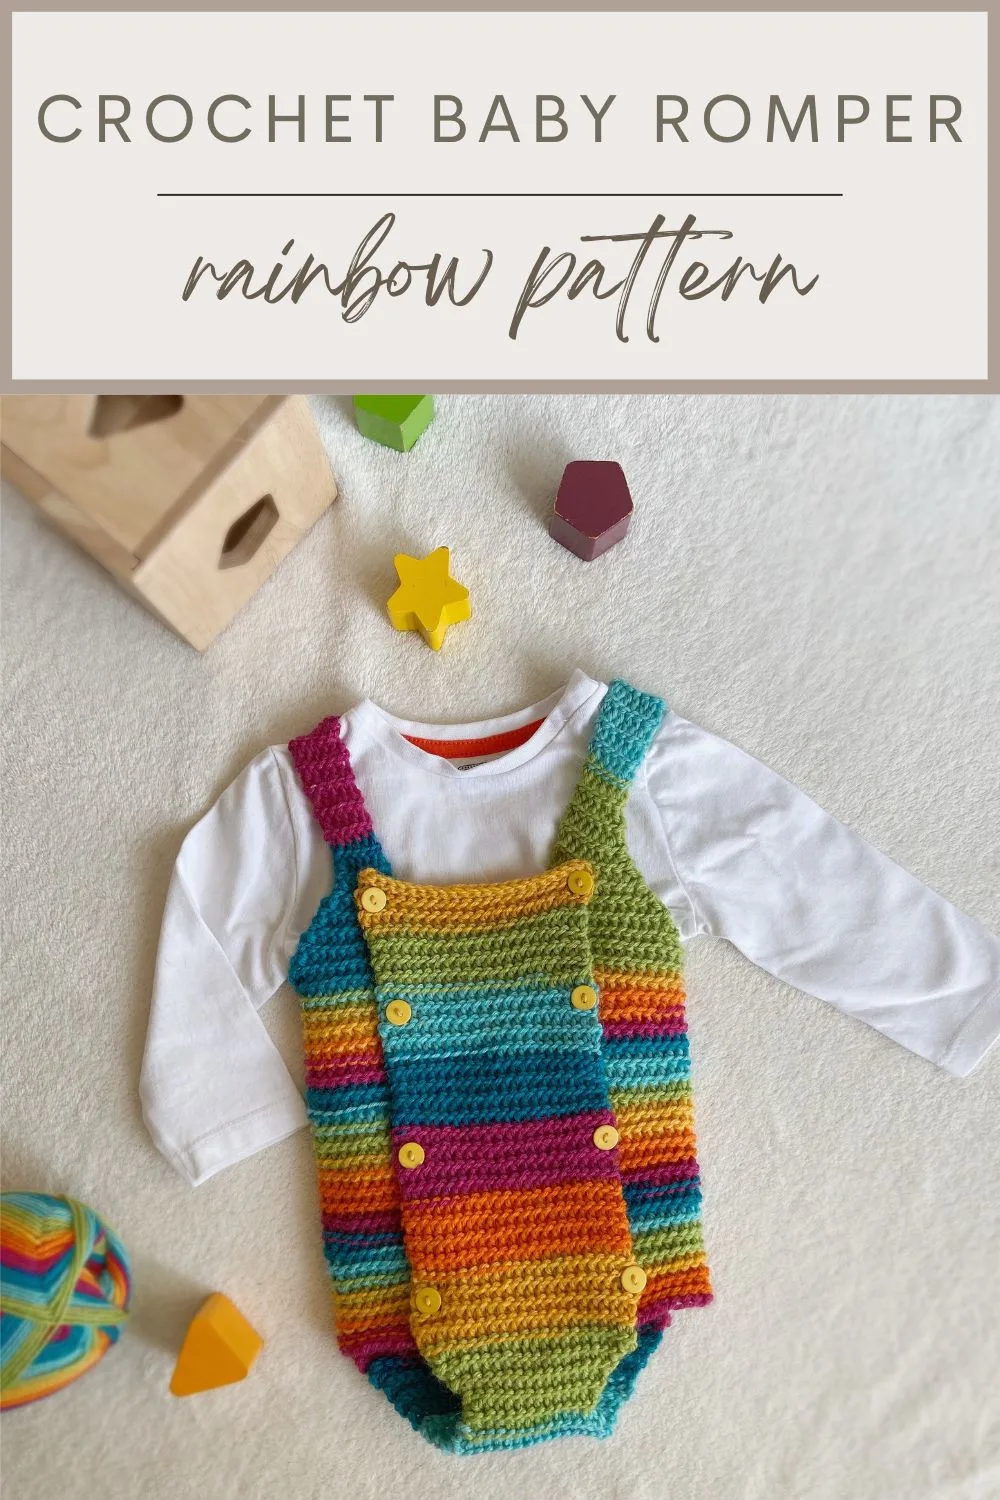 Easy crochet baby romper pattern in rainbow yarn.